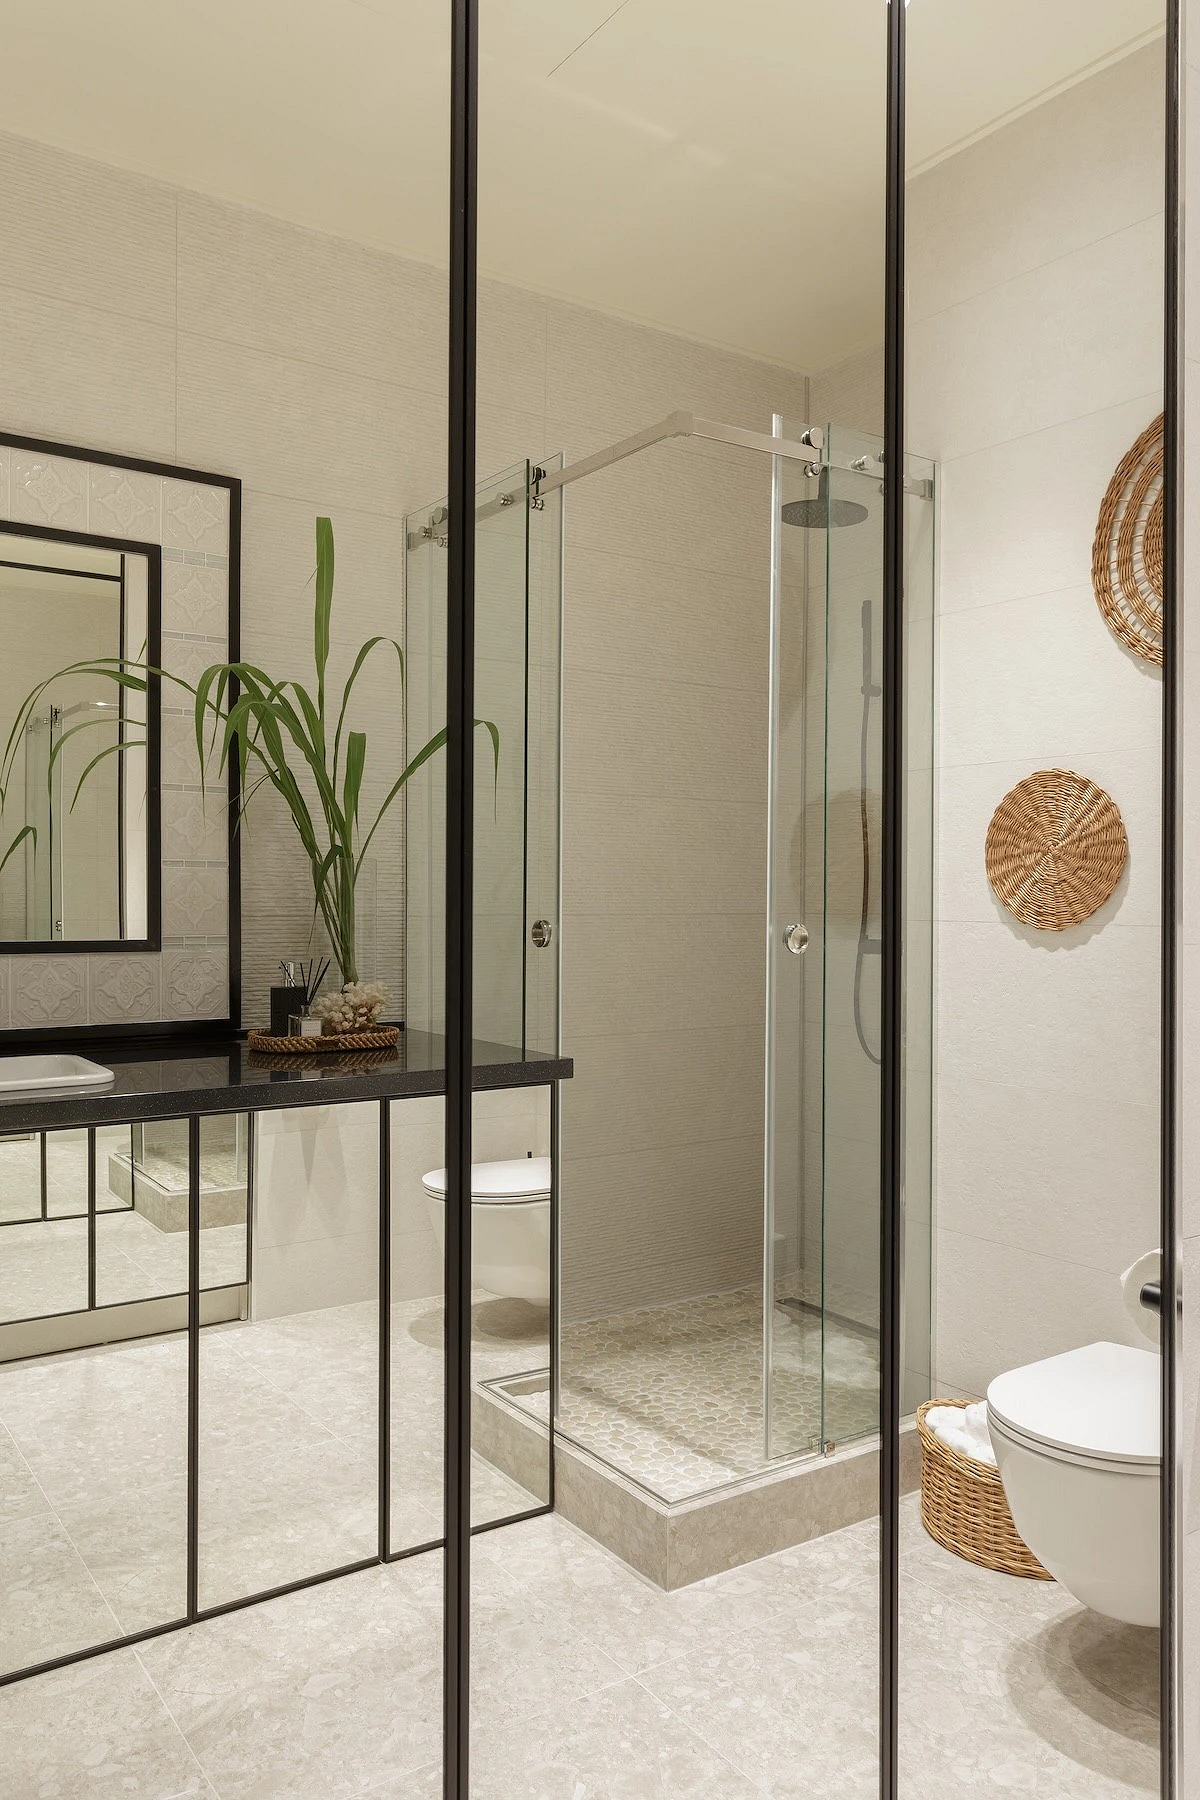 9 необычных решений для ванной комнаты из проектов дизайнеров8